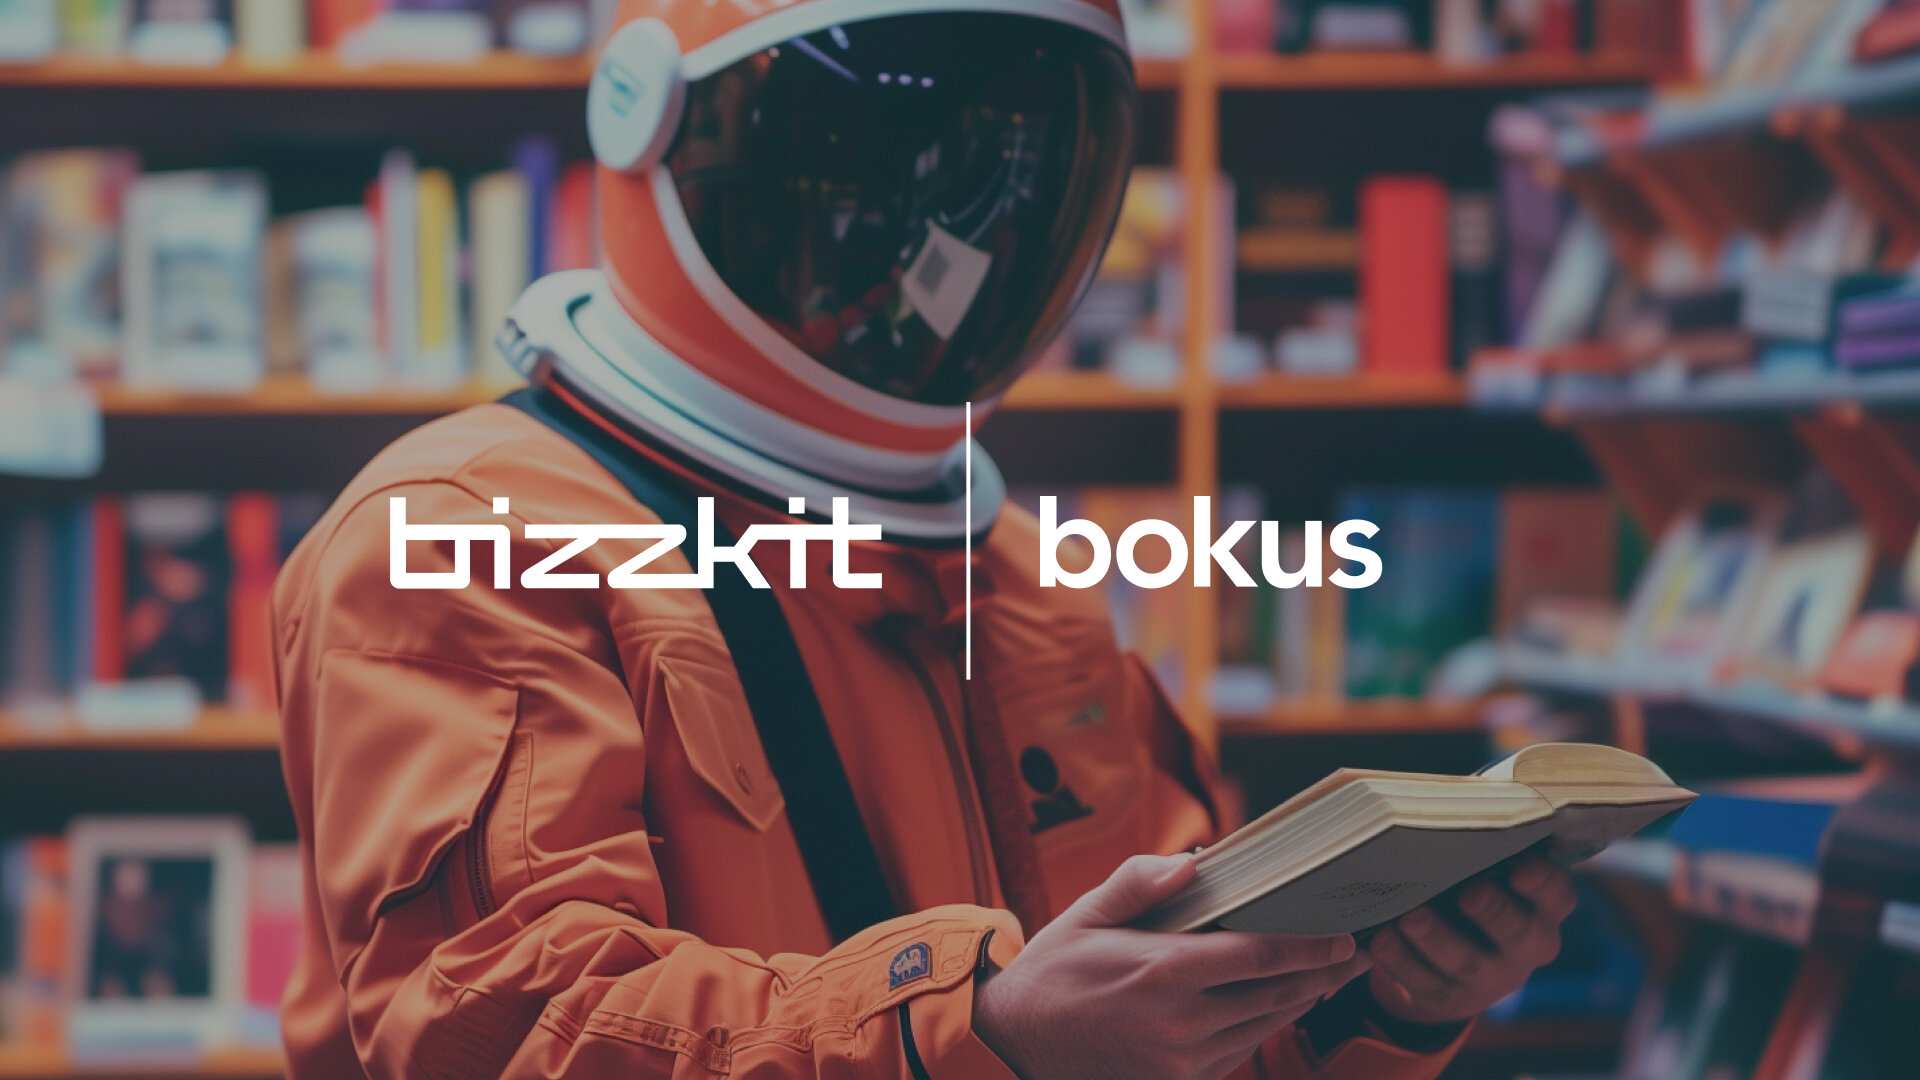 Bokusgruppen väljer Bizzkit för att växa sin onlineverksamhet